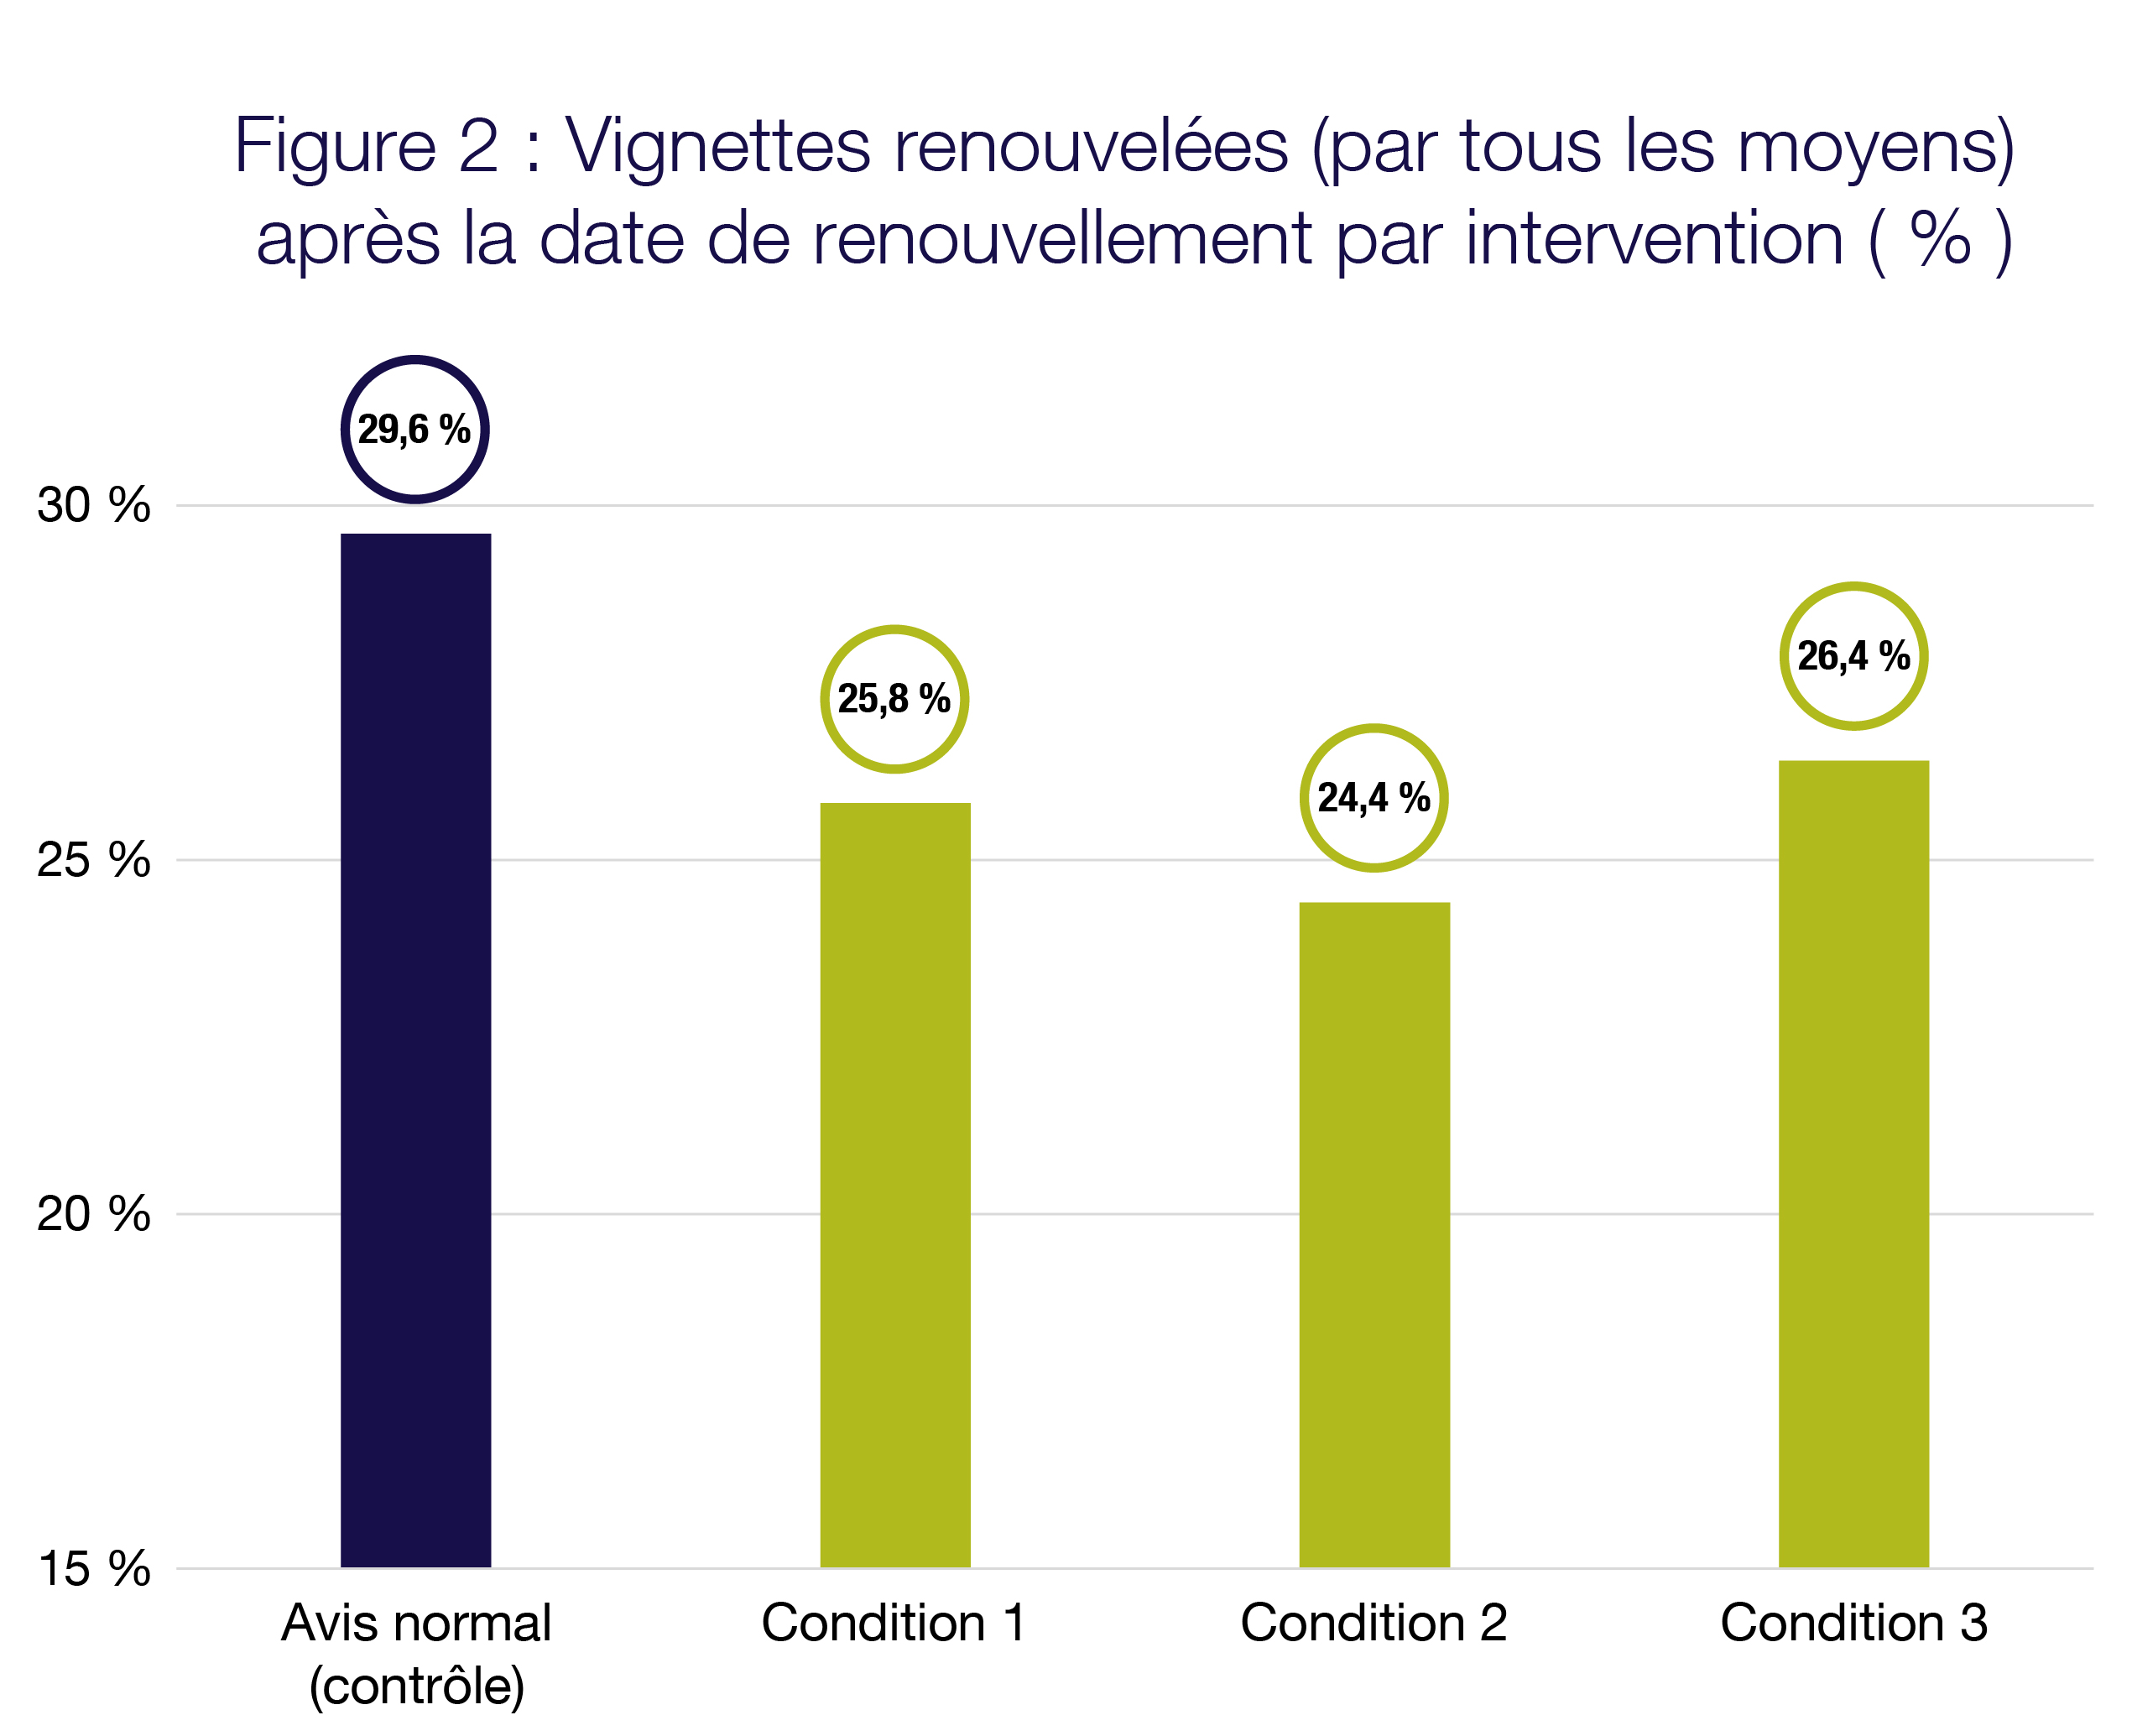 Tableau illustrant le pourcentage de vignettes d’immatriculation renouvelées en retard, par condition. Avis normal 29,6 %. Condition 1 25,8 %. Condition 2 24,4 %	Condition 3 26,4 %.